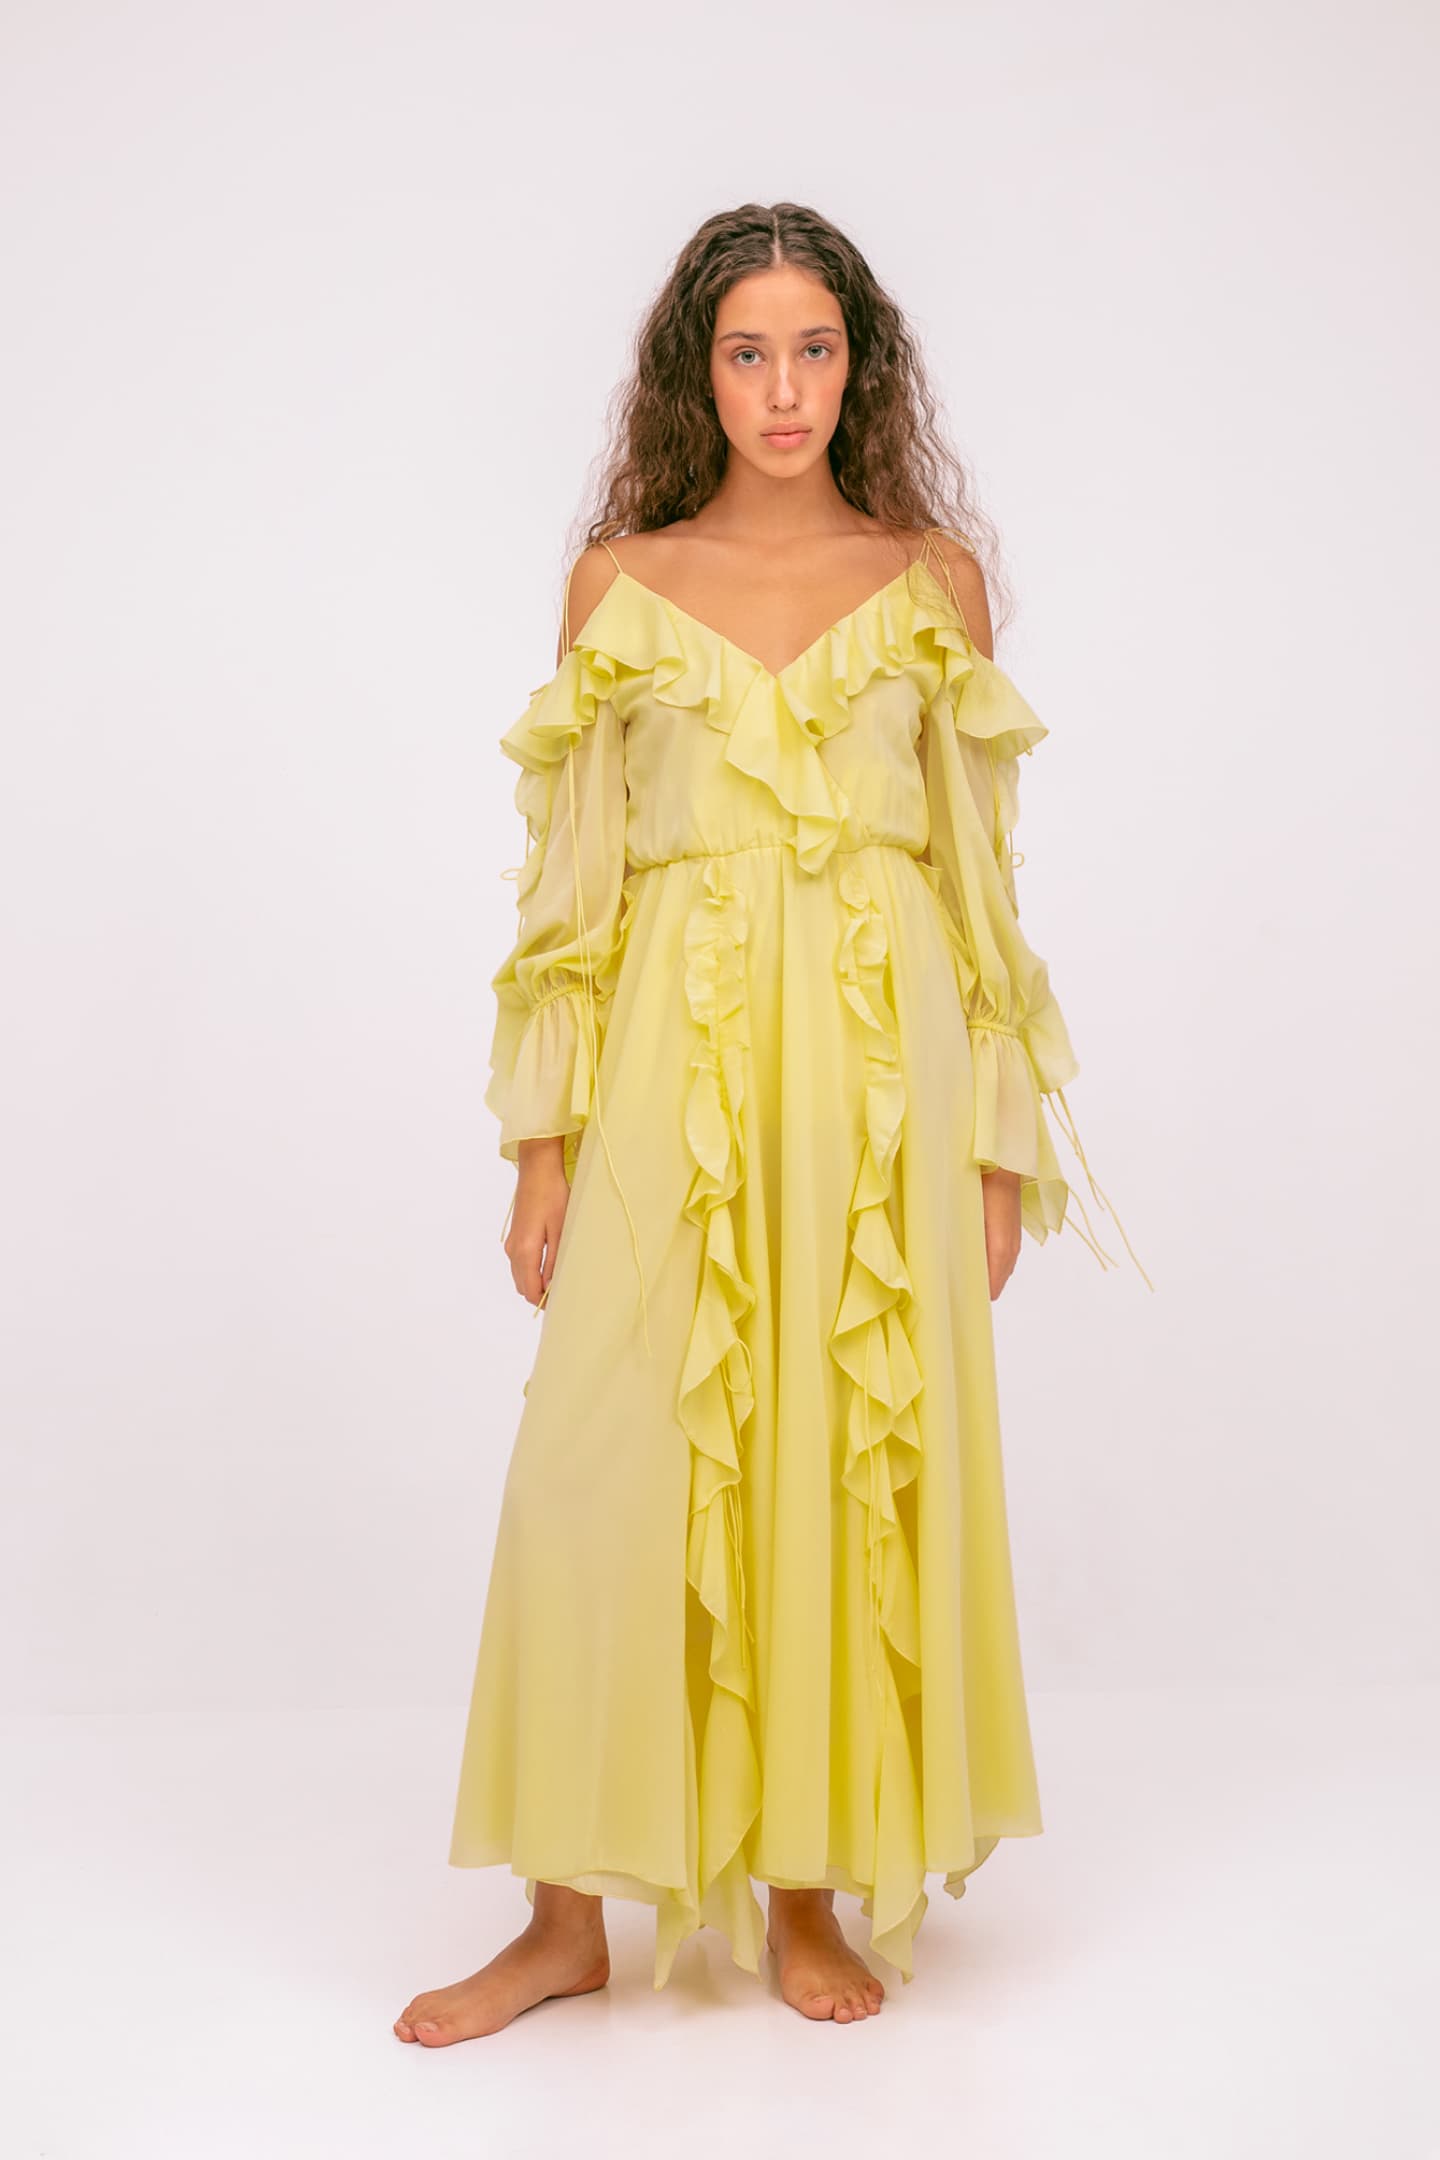 Model in Morning Forest lemon dress